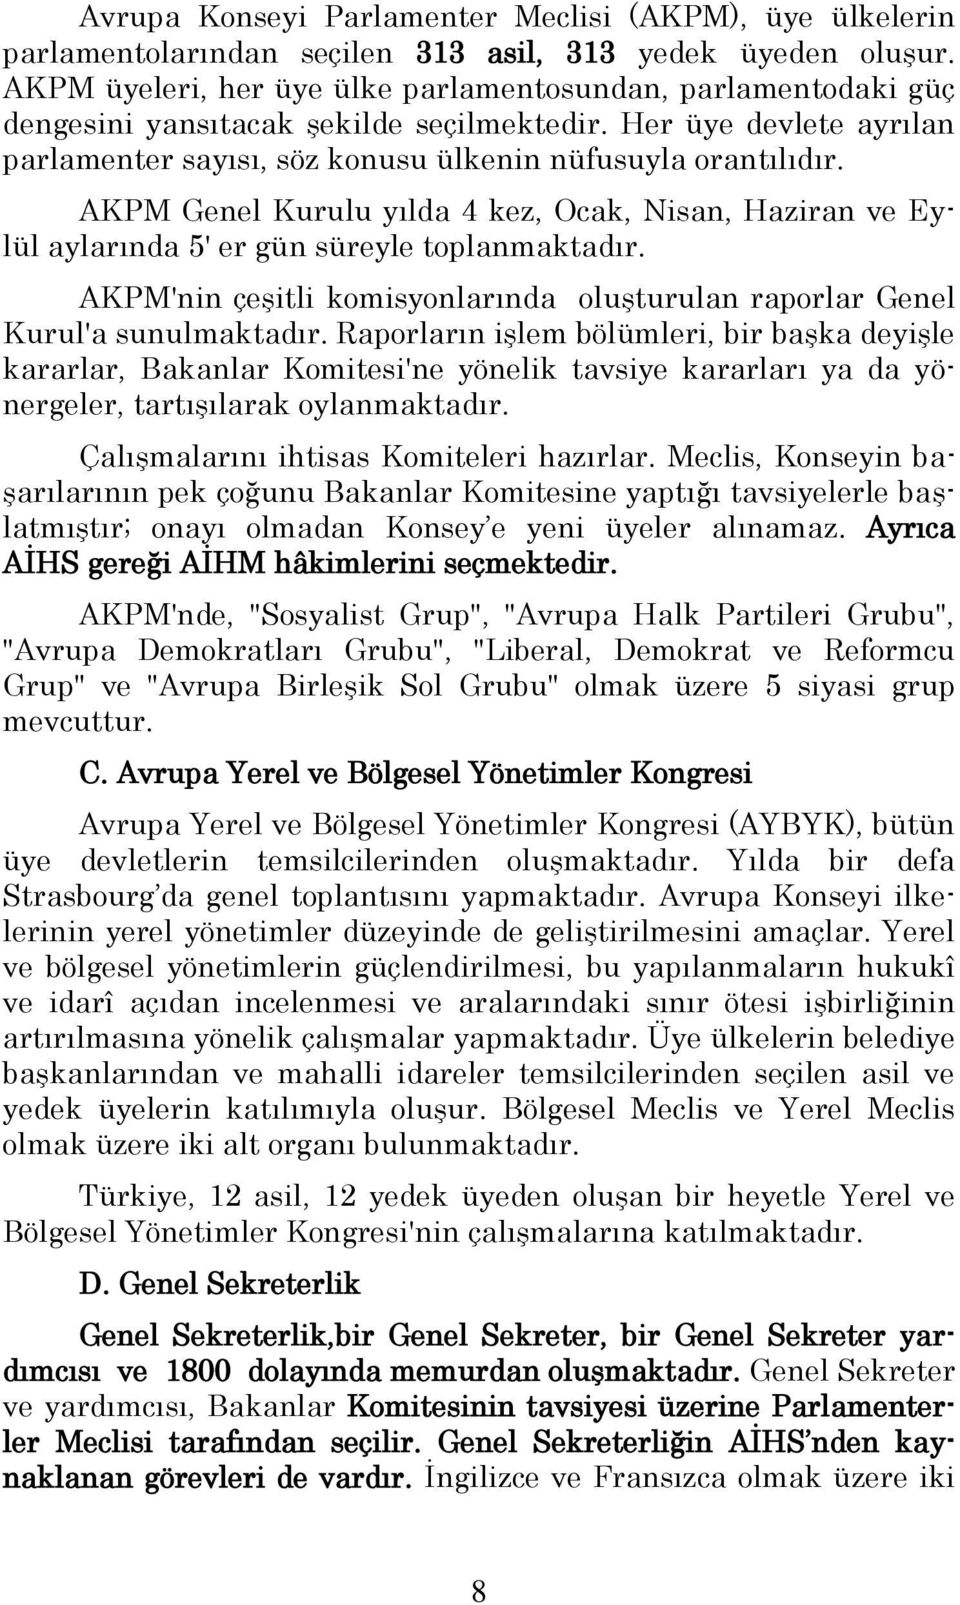 AKPM Genel Kurulu yılda 4 kez, Ocak, Nisan, Haziran ve Eylül aylarında 5' er gün süreyle toplanmaktadır. AKPM'nin çeģitli komisyonlarında oluģturulan raporlar Genel Kurul'a sunulmaktadır.